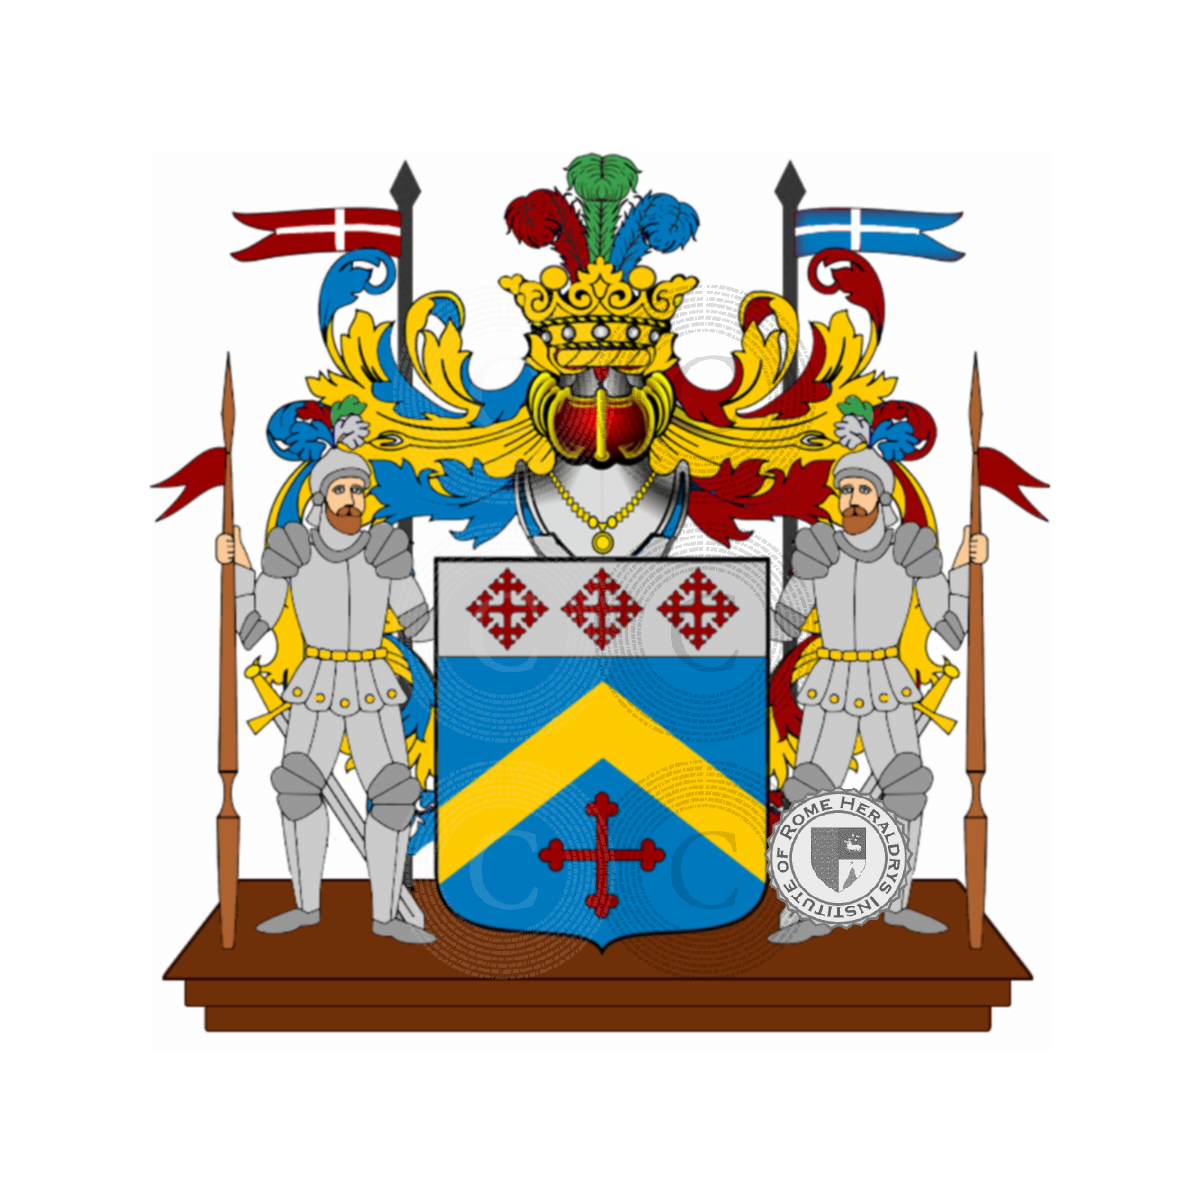 Coat of arms of family Soropago